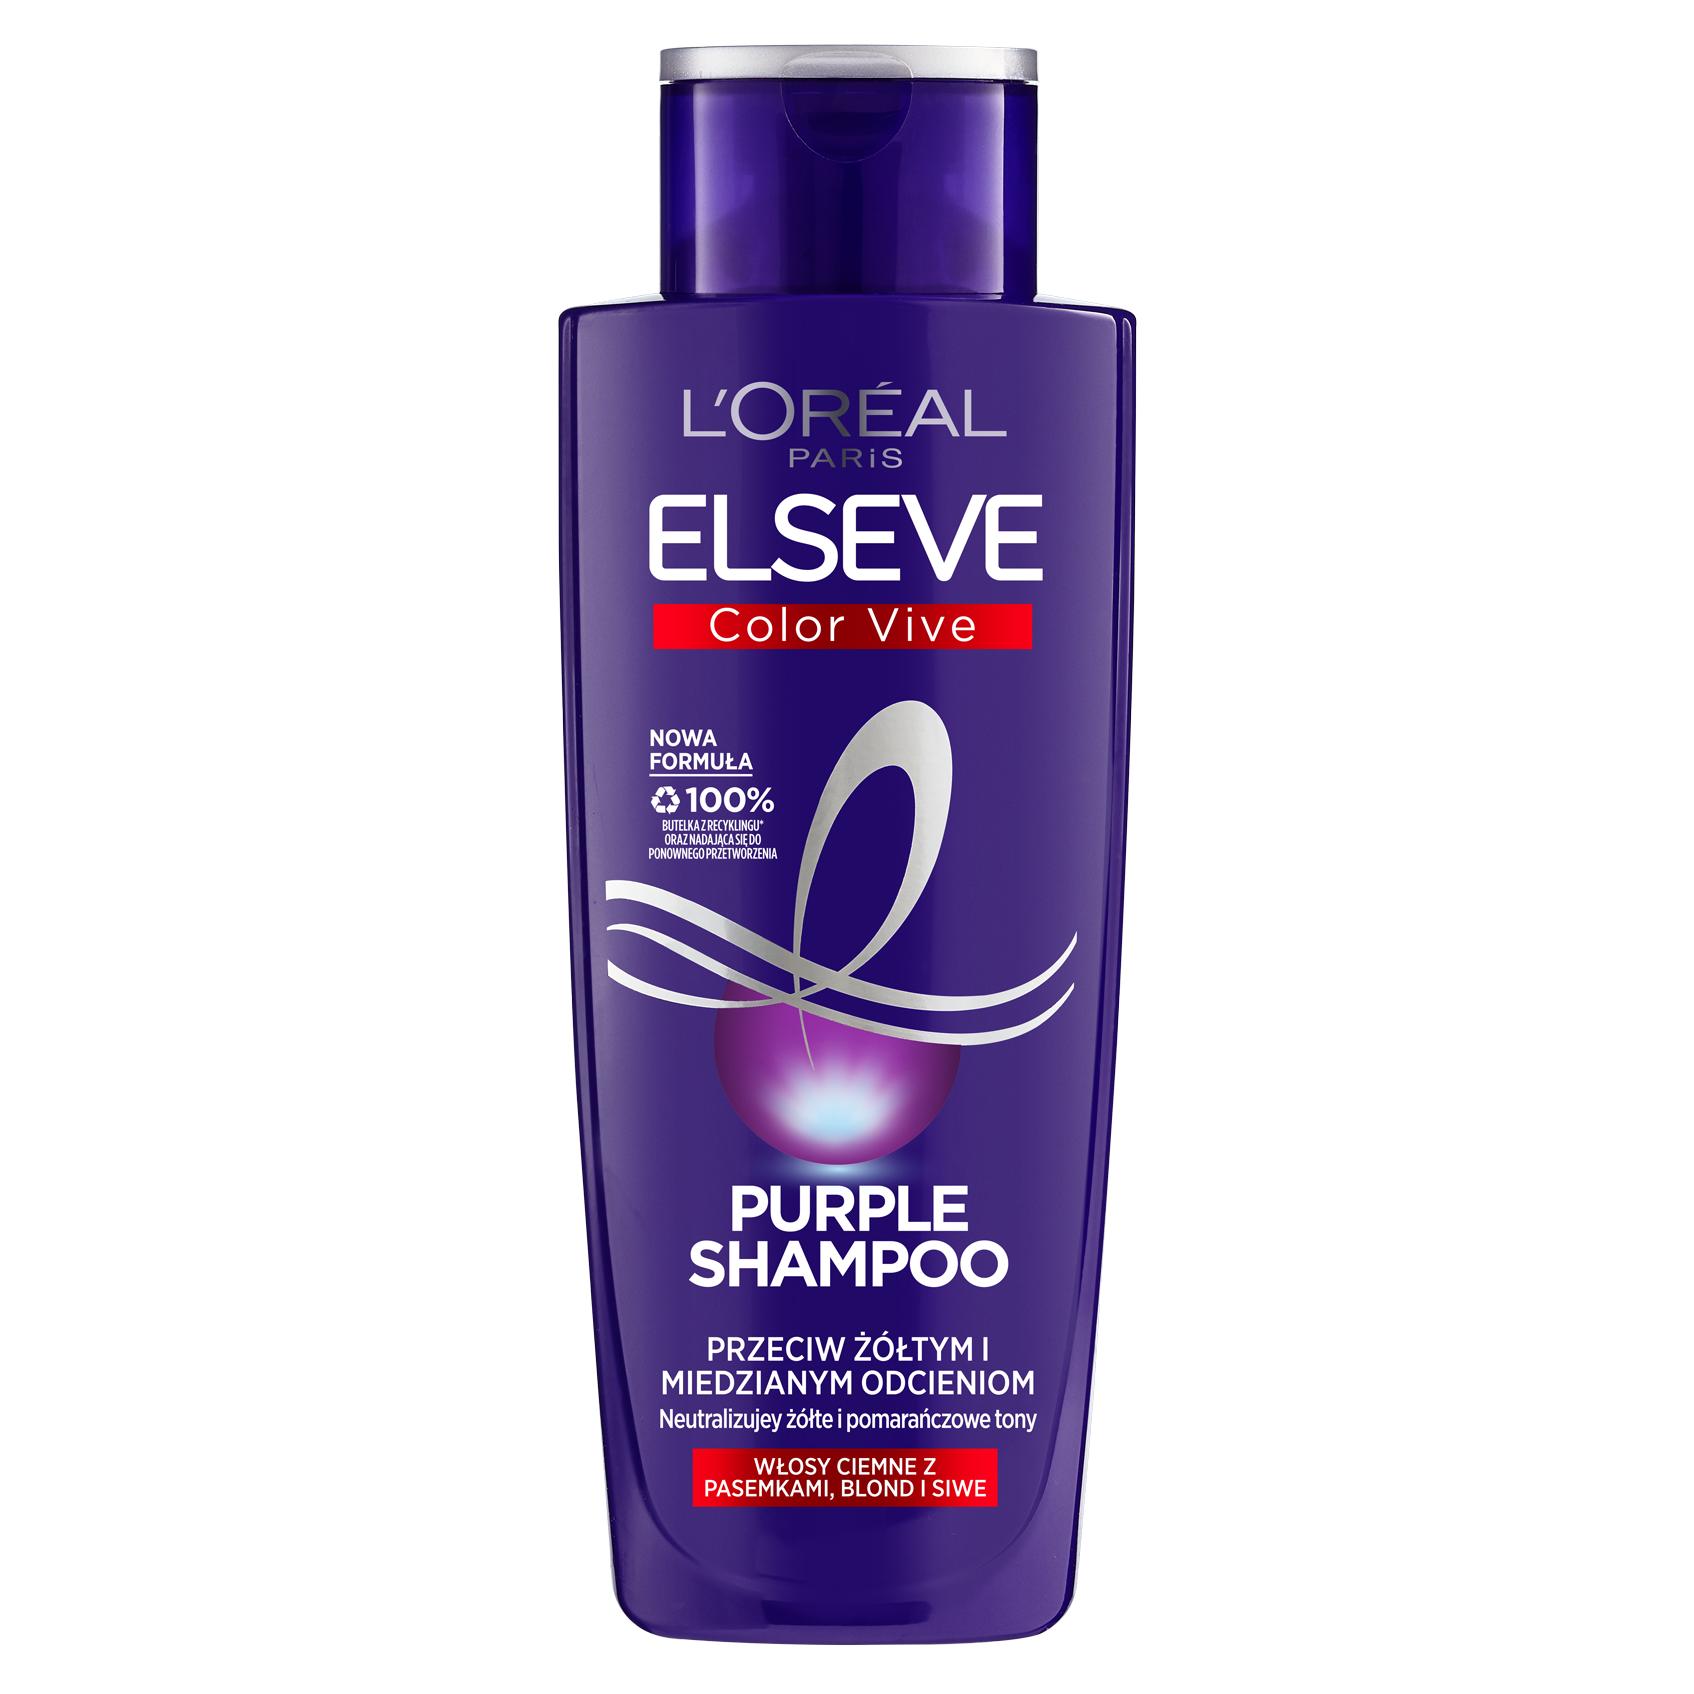 loreal fioletowy szampon niwelujacy zółty odcien wlosow